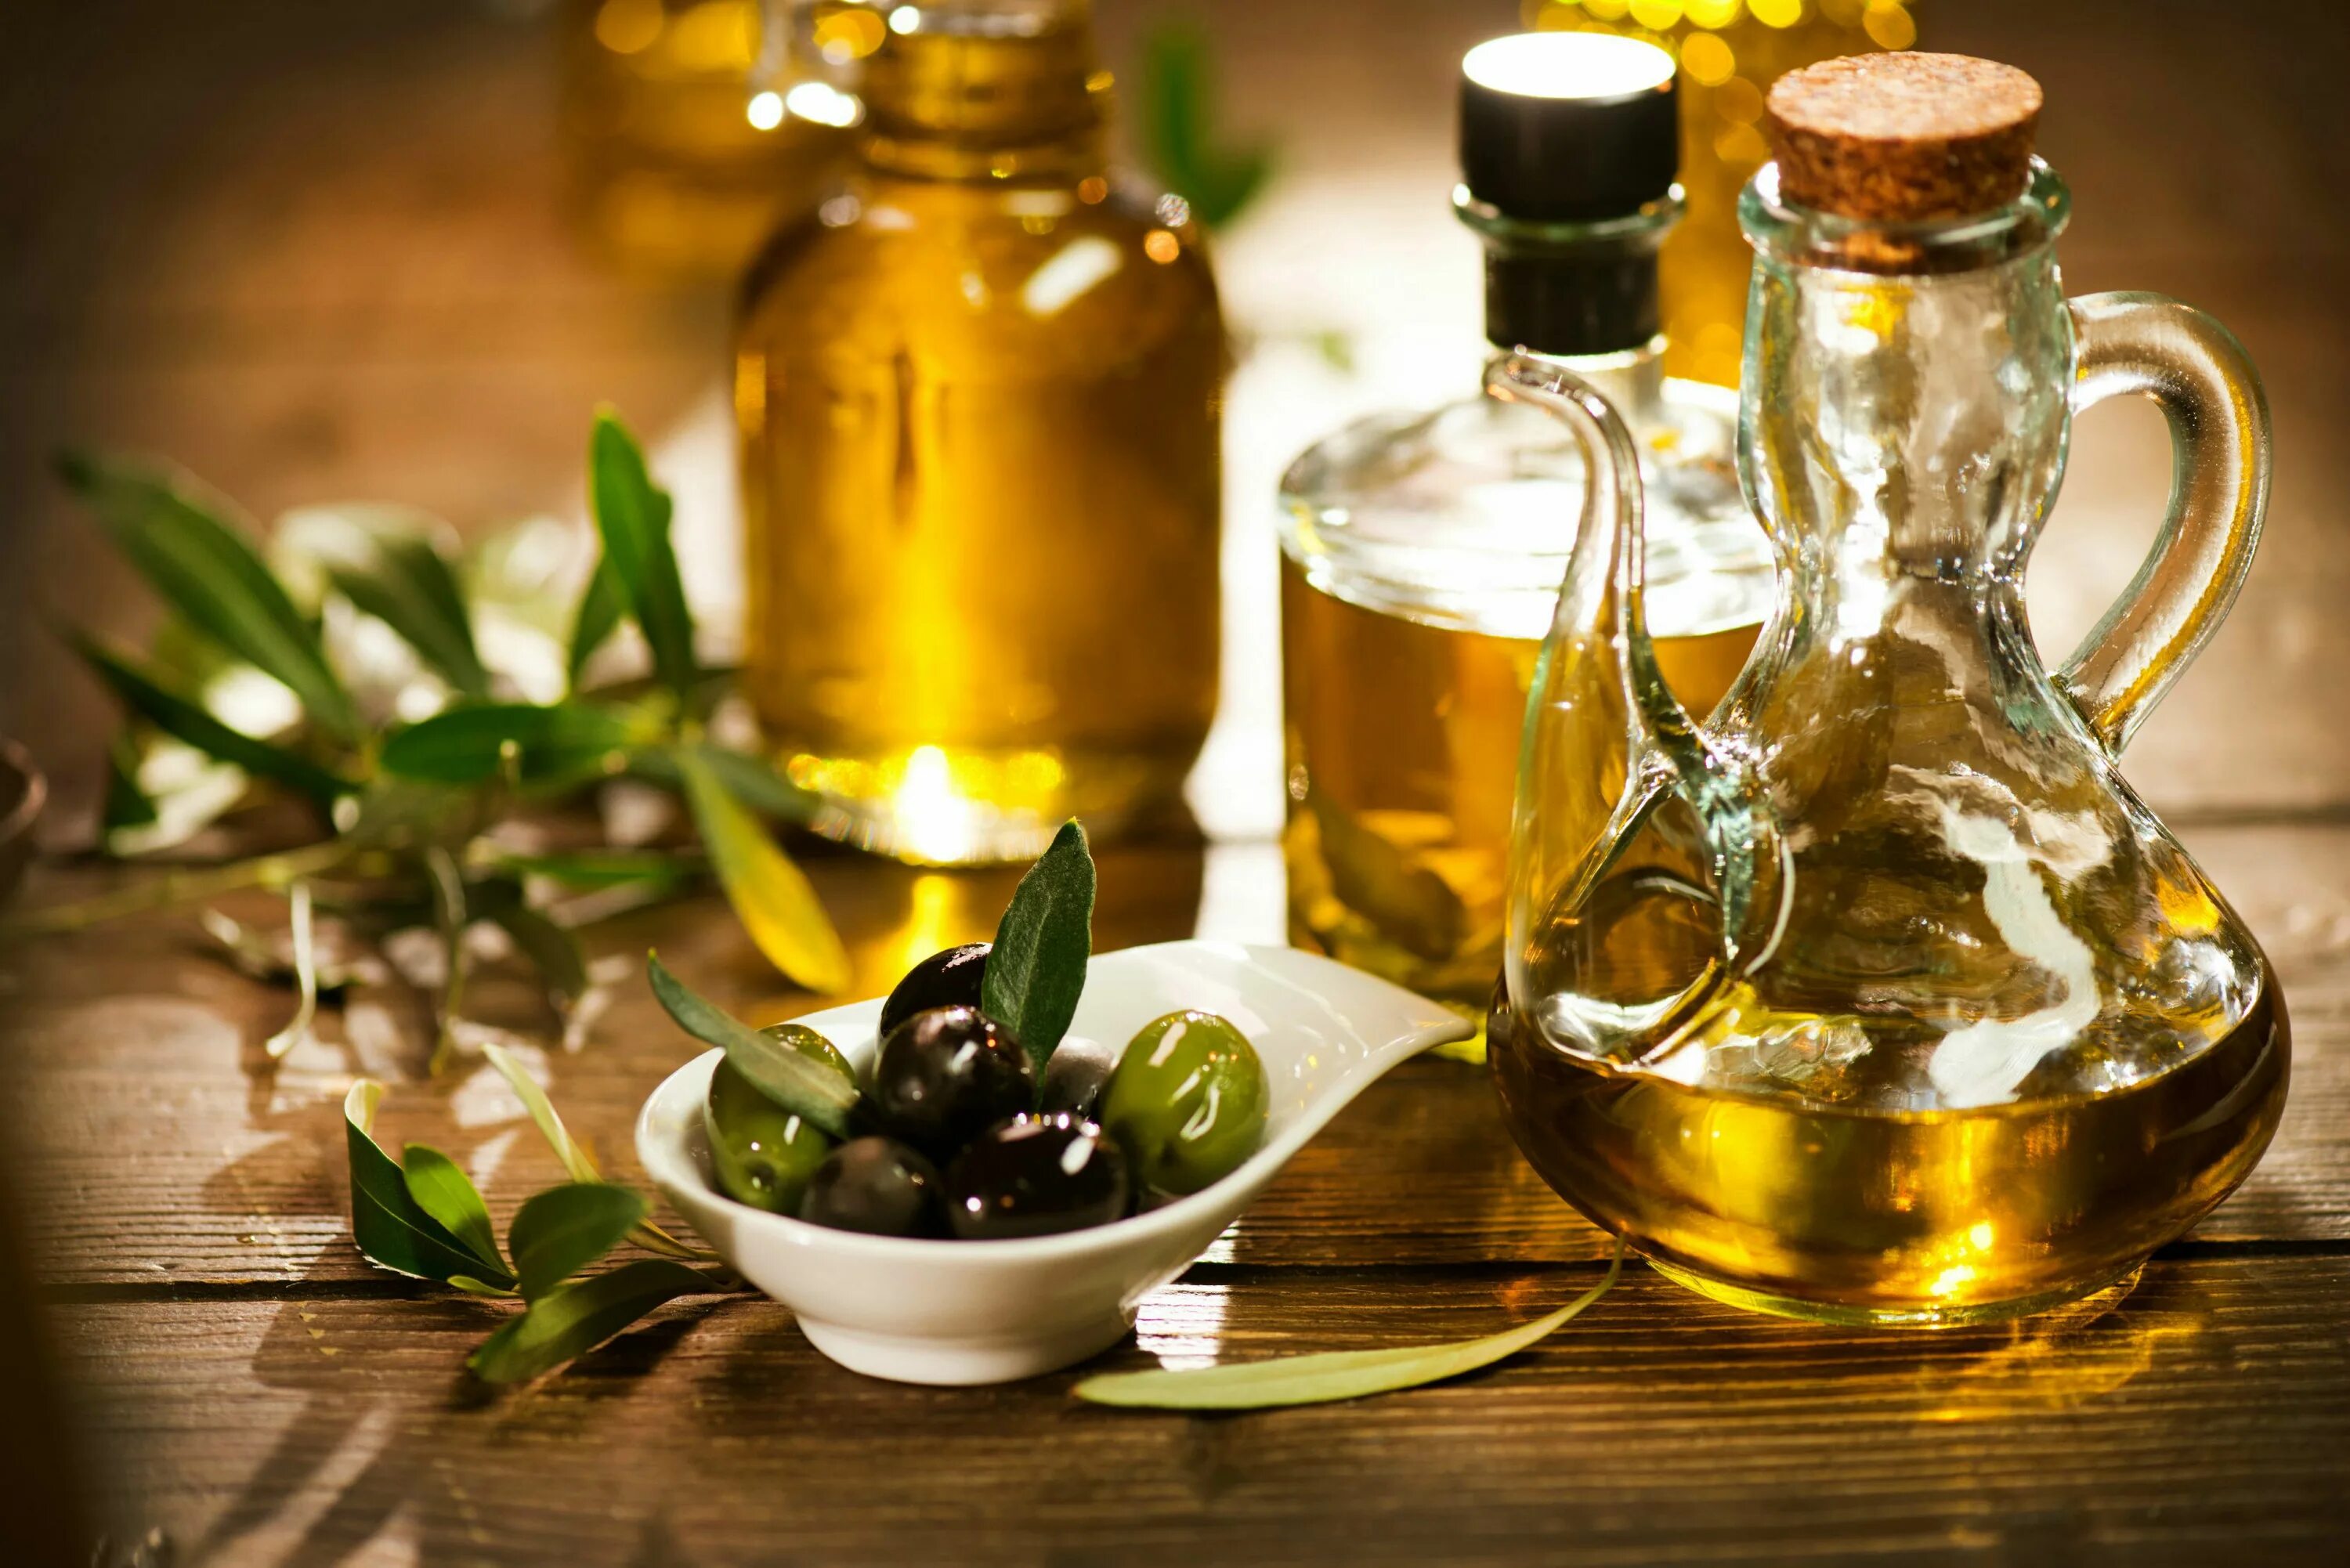 Olive Oil масло оливковое. Олив Ойл масло оливковое. Масло растительное с оливковым. Оливки и оливковое масло. Оливковое масло на тощак